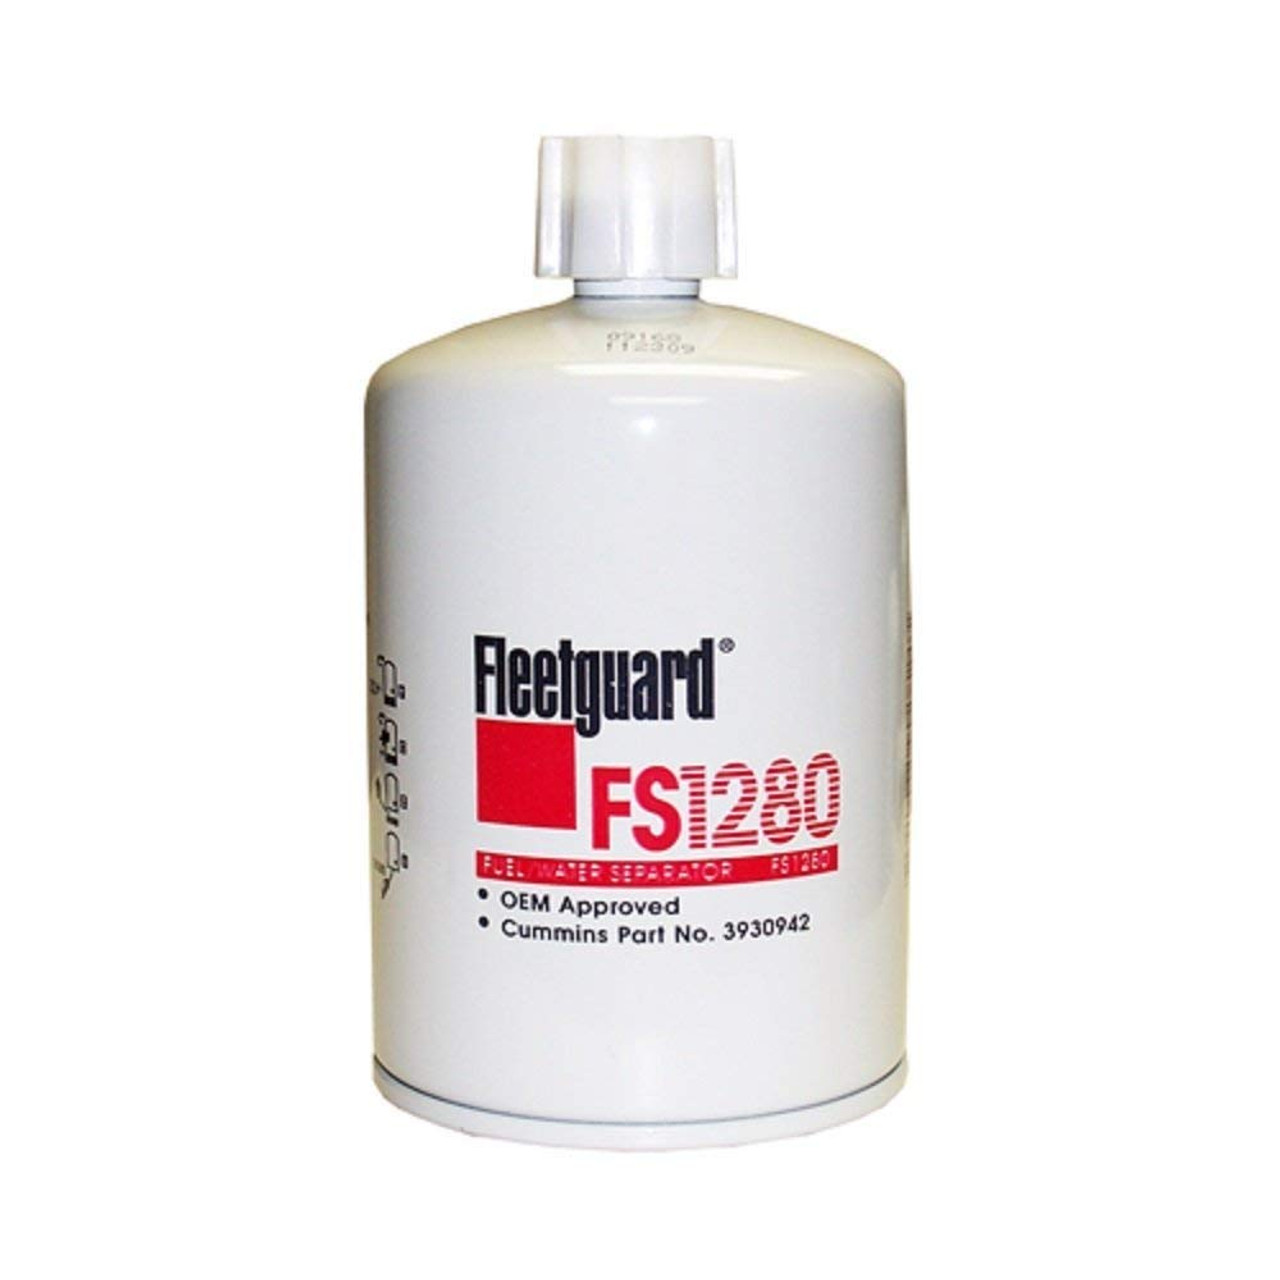 Fleetguard FS1280 Fuel Separator Spinon Stratapore